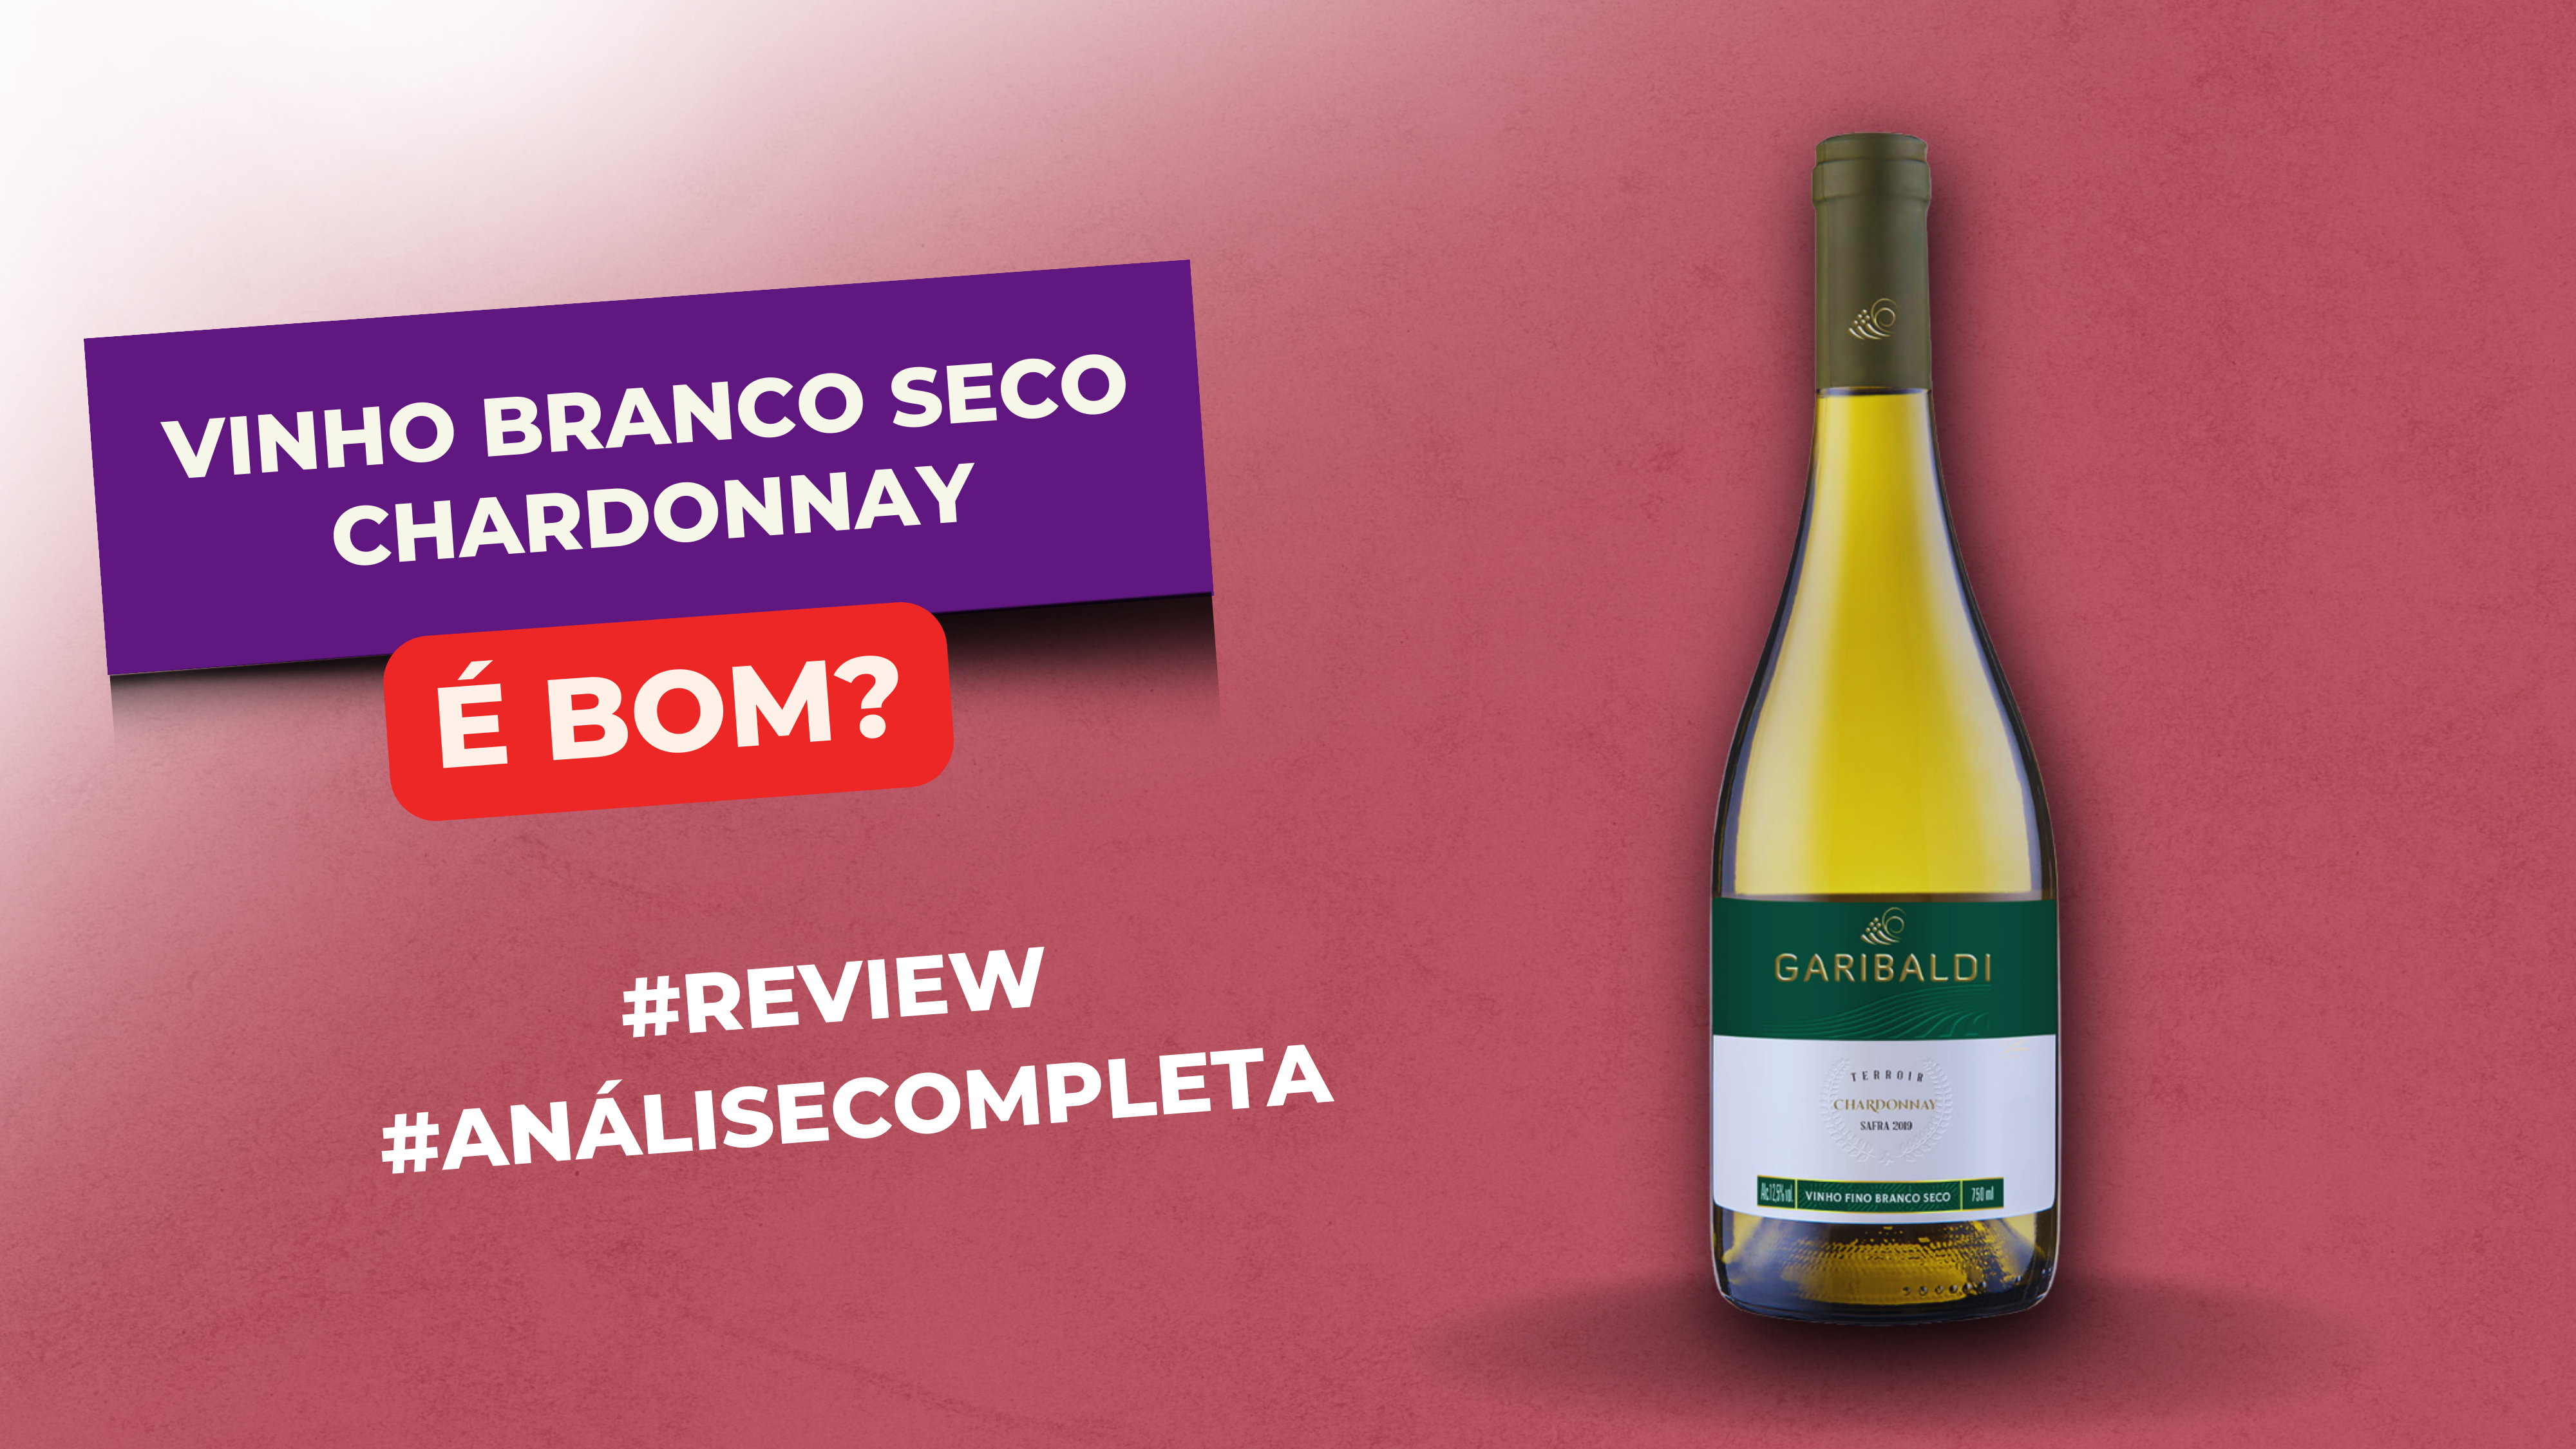 Vinho Branco Seco Chardonnay é Bom? #Review #Resenha #Avaliação